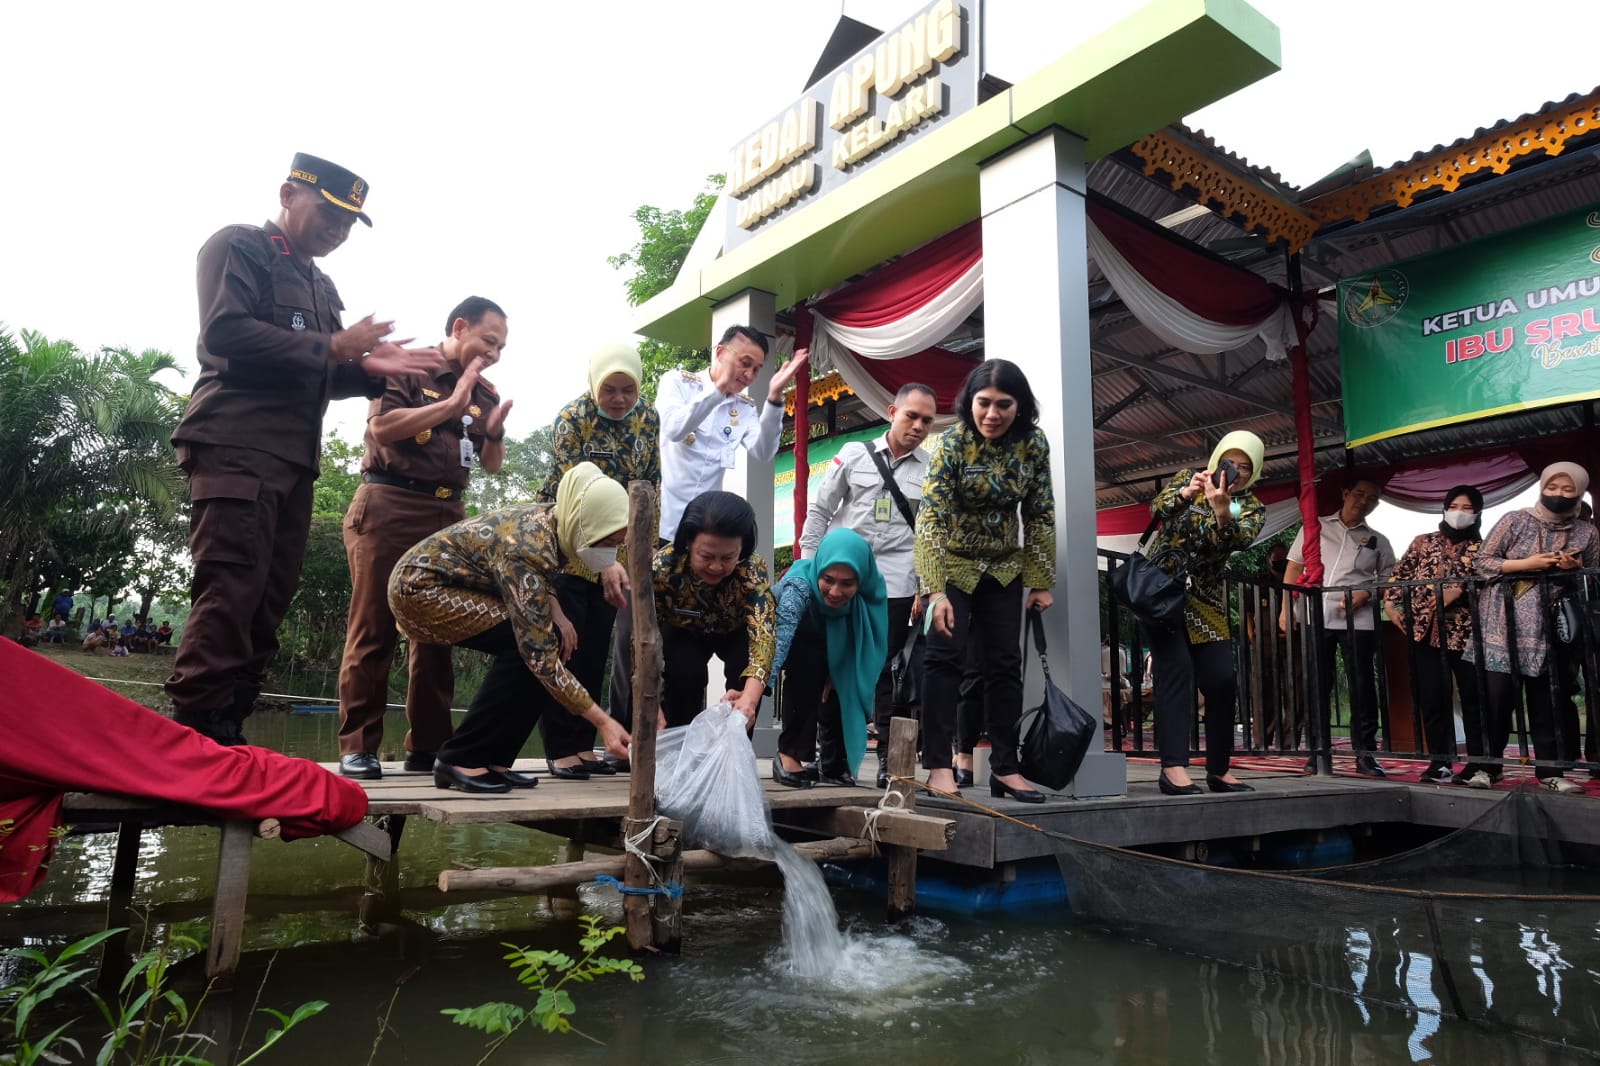 Ketua Umum Ikatan Adhyaksa Darmakarini Sruningwati Tabur Benih Ikan di Danau Kelari